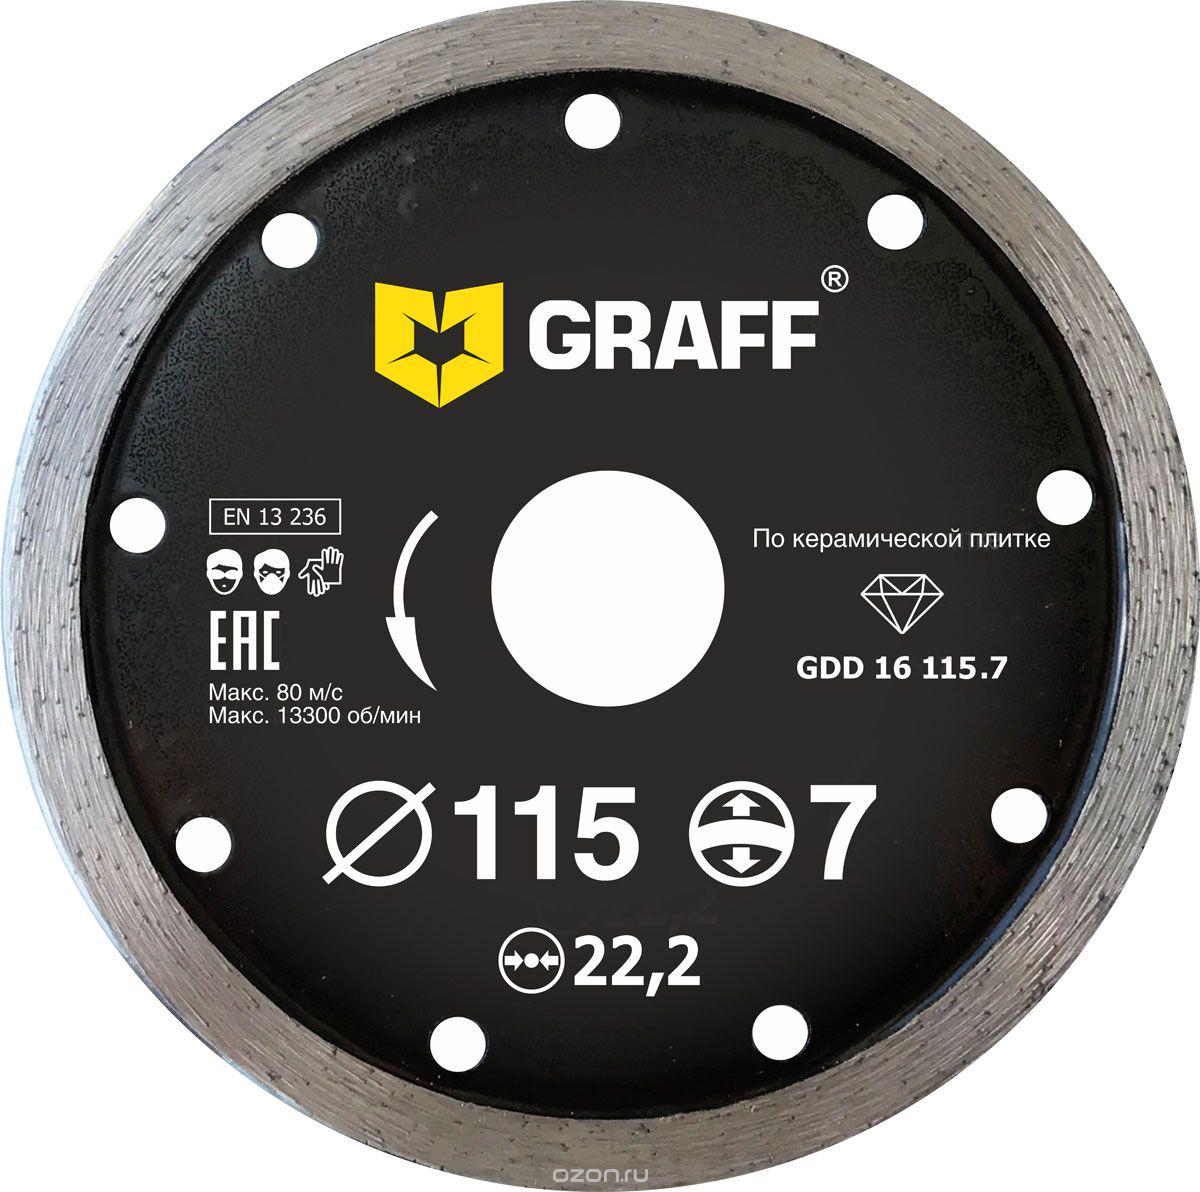 Диск отрезной алмазный GRAFF (GRAFF GDD 16 115.7) Ф115х22мм по керамике диск алмазный 7 13 мм для заточки концевых фрез sdc7 13lx13